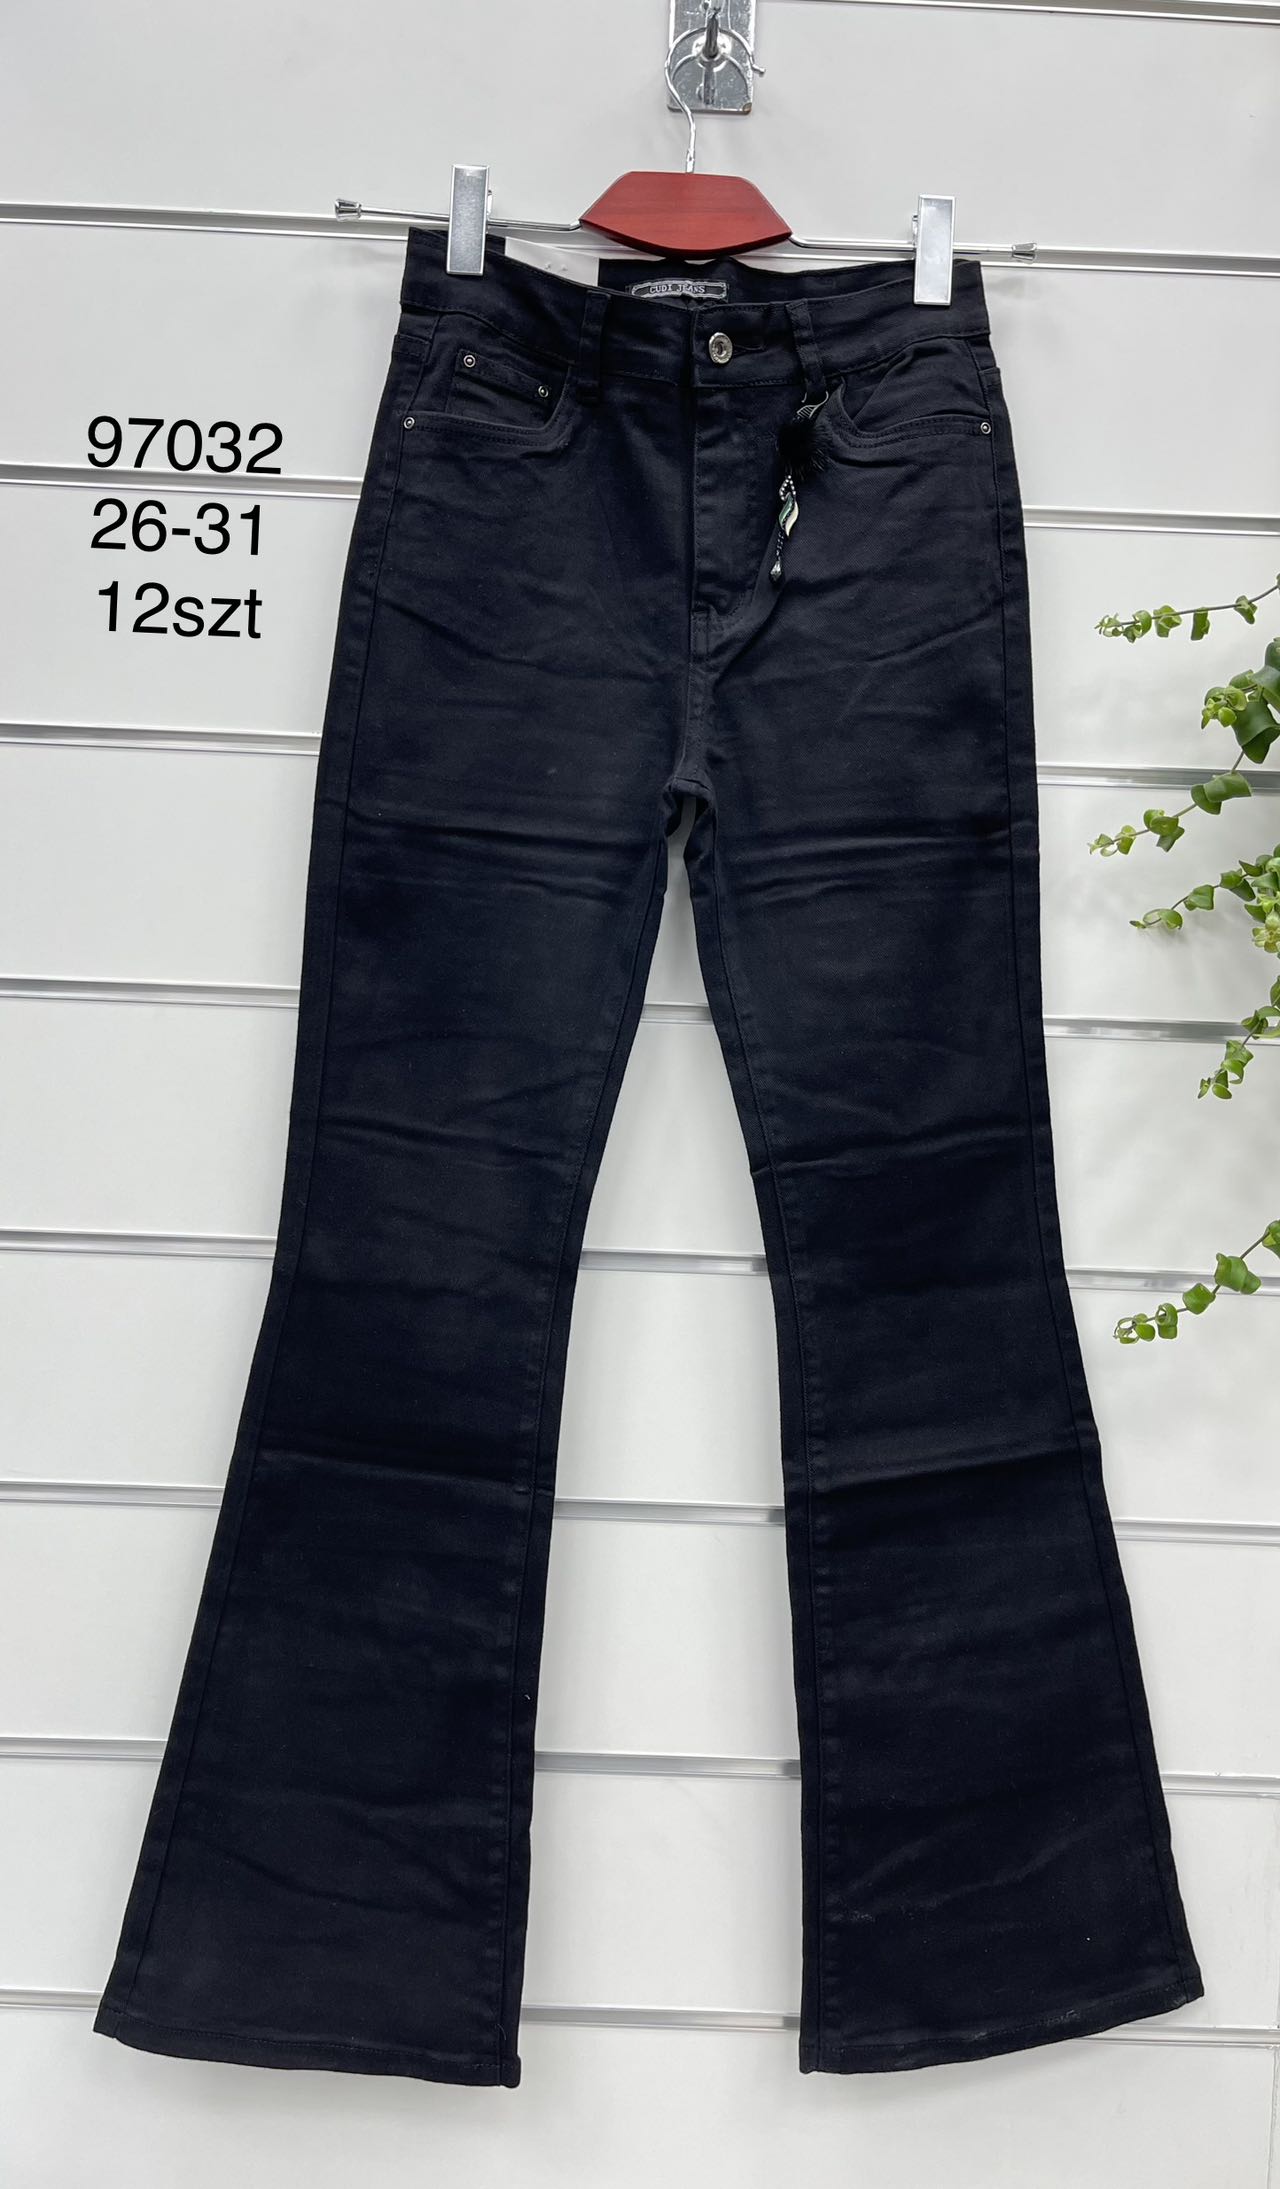 Spodnie damskie jeans Roz  26-31 .  1 kolor . Paczka 12szt